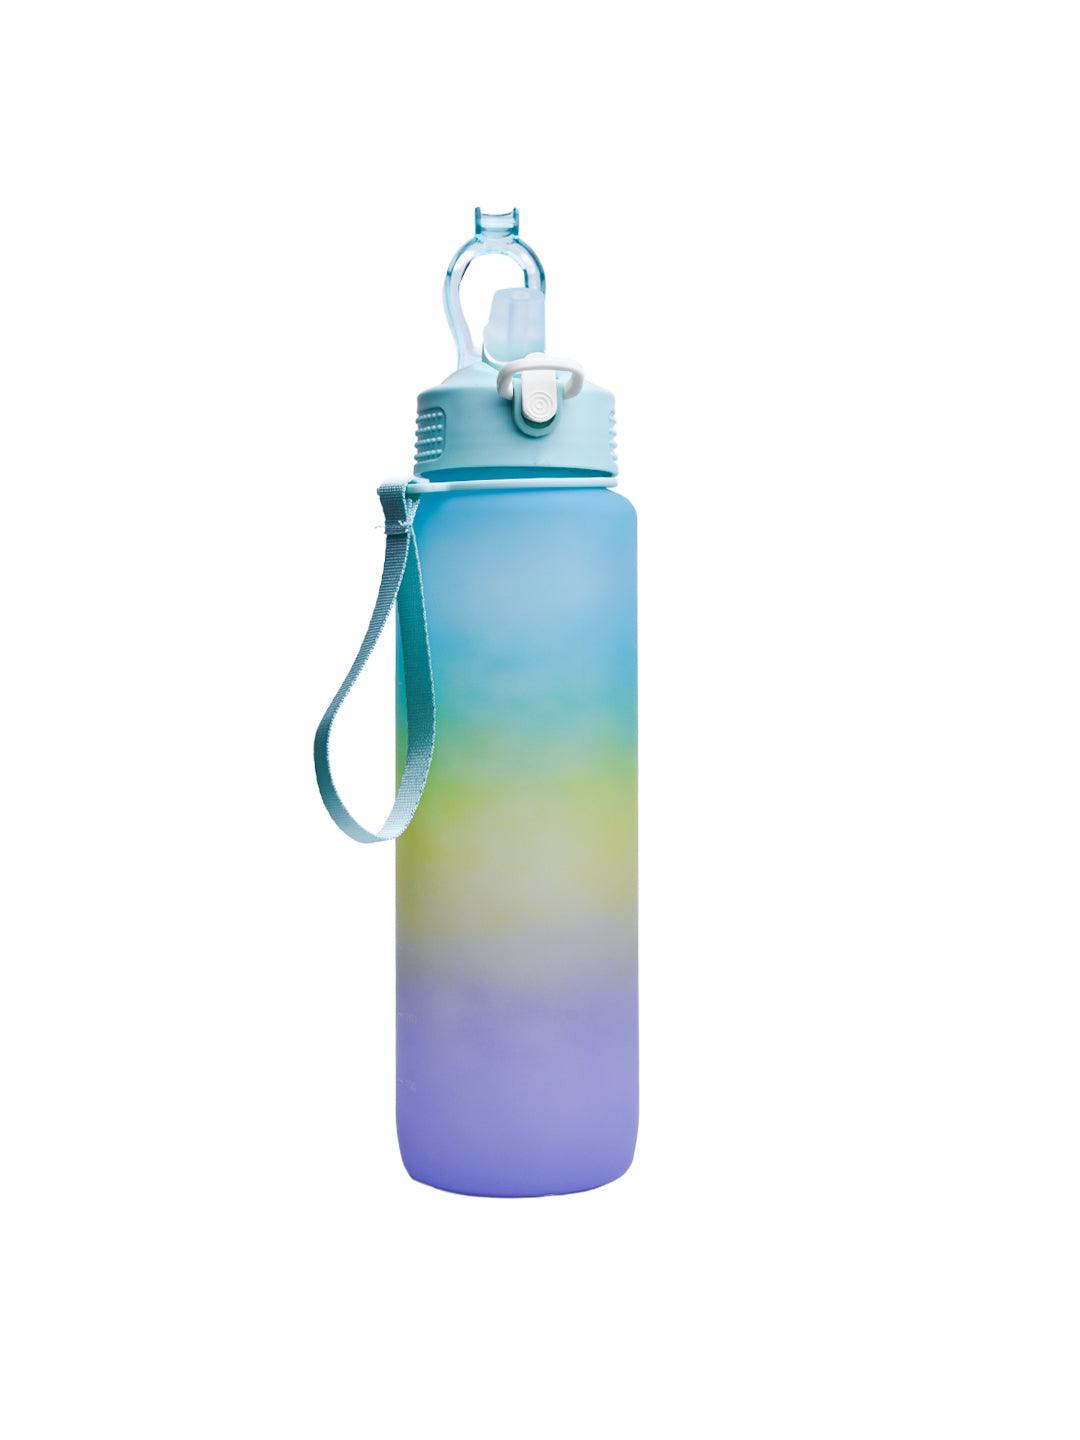 Travel Water Bottle, Multi, 1100 mL - MARKET 99